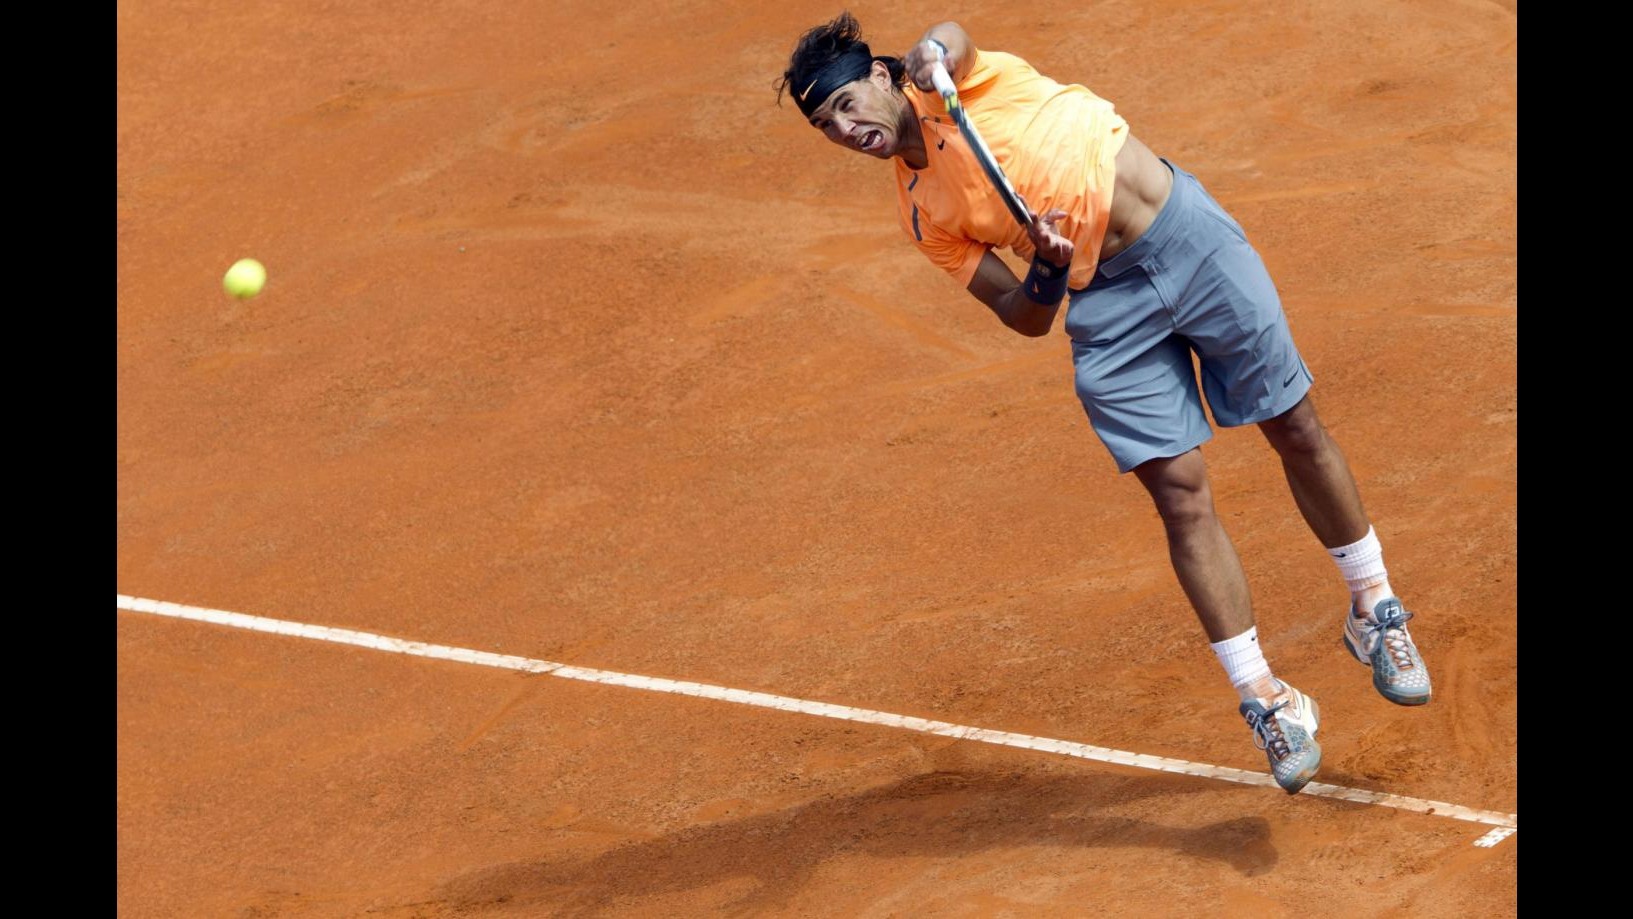 Internazionali, finali Nadal-Djokovic e Na Li-Sharapova